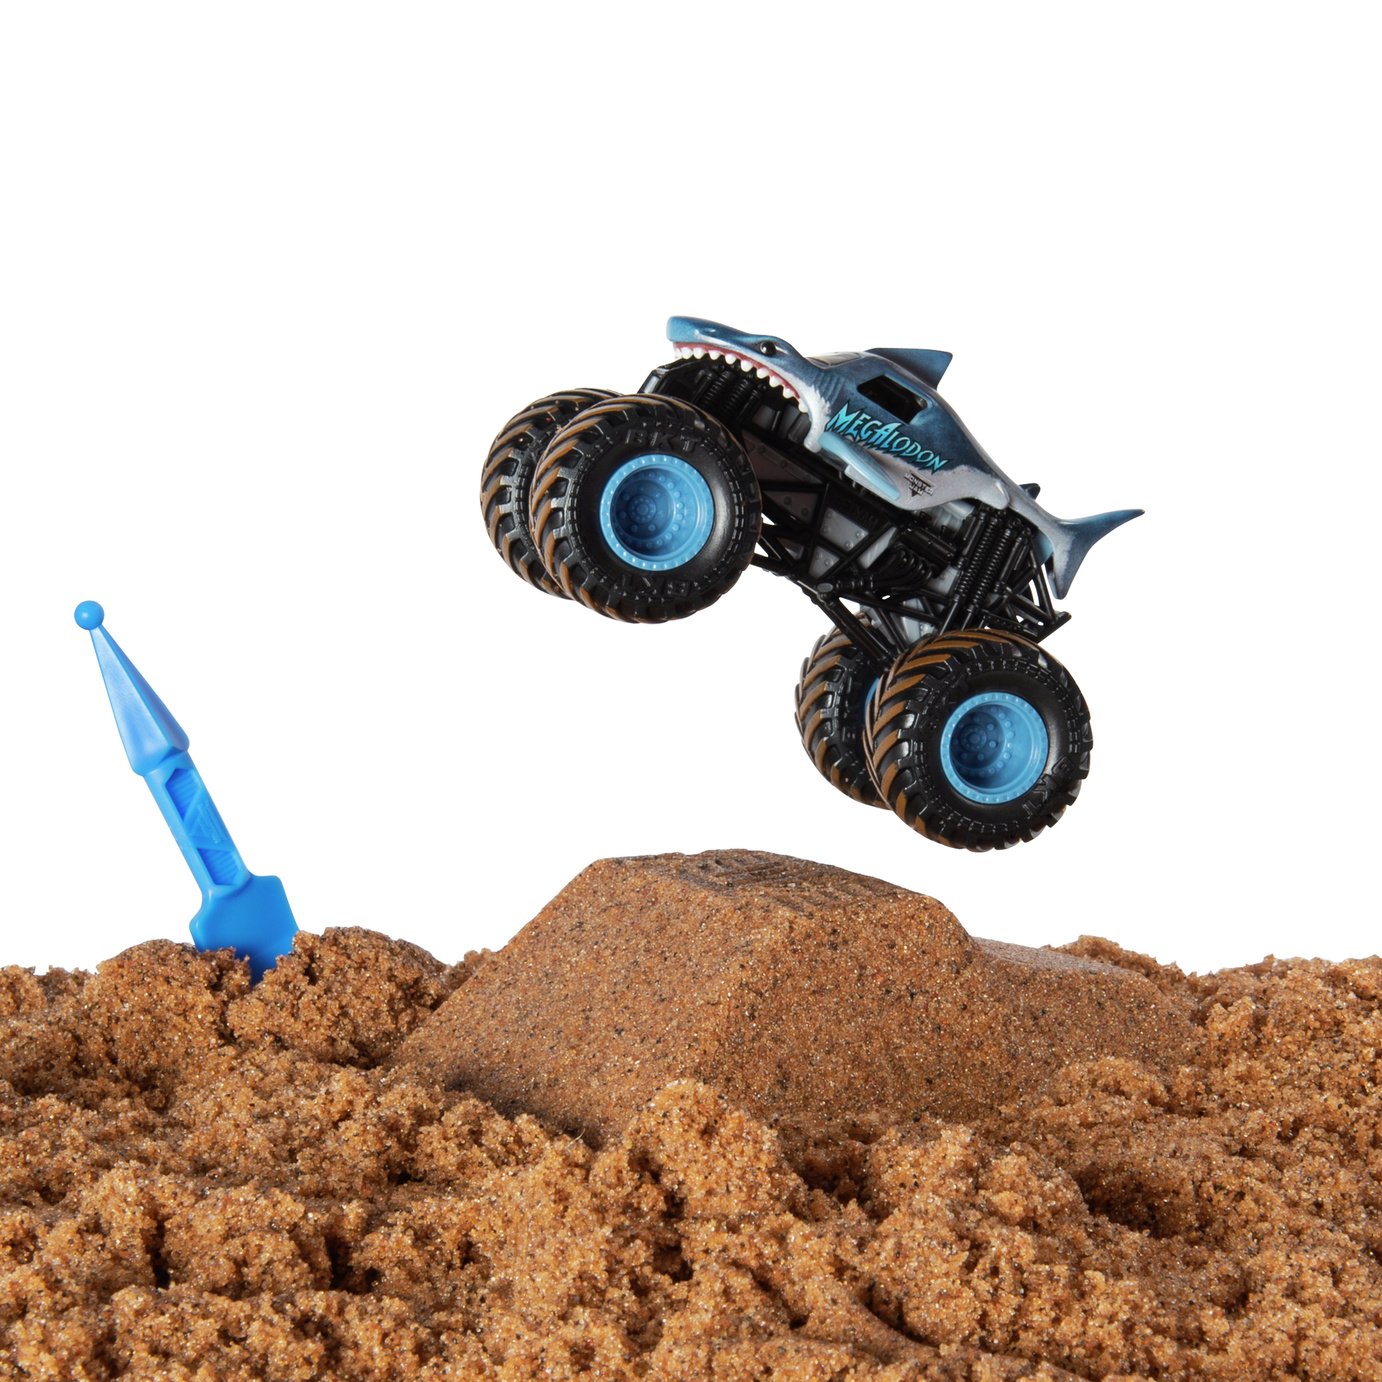 Monster Jam Kinetic Dirt Starter Set and Truck Review